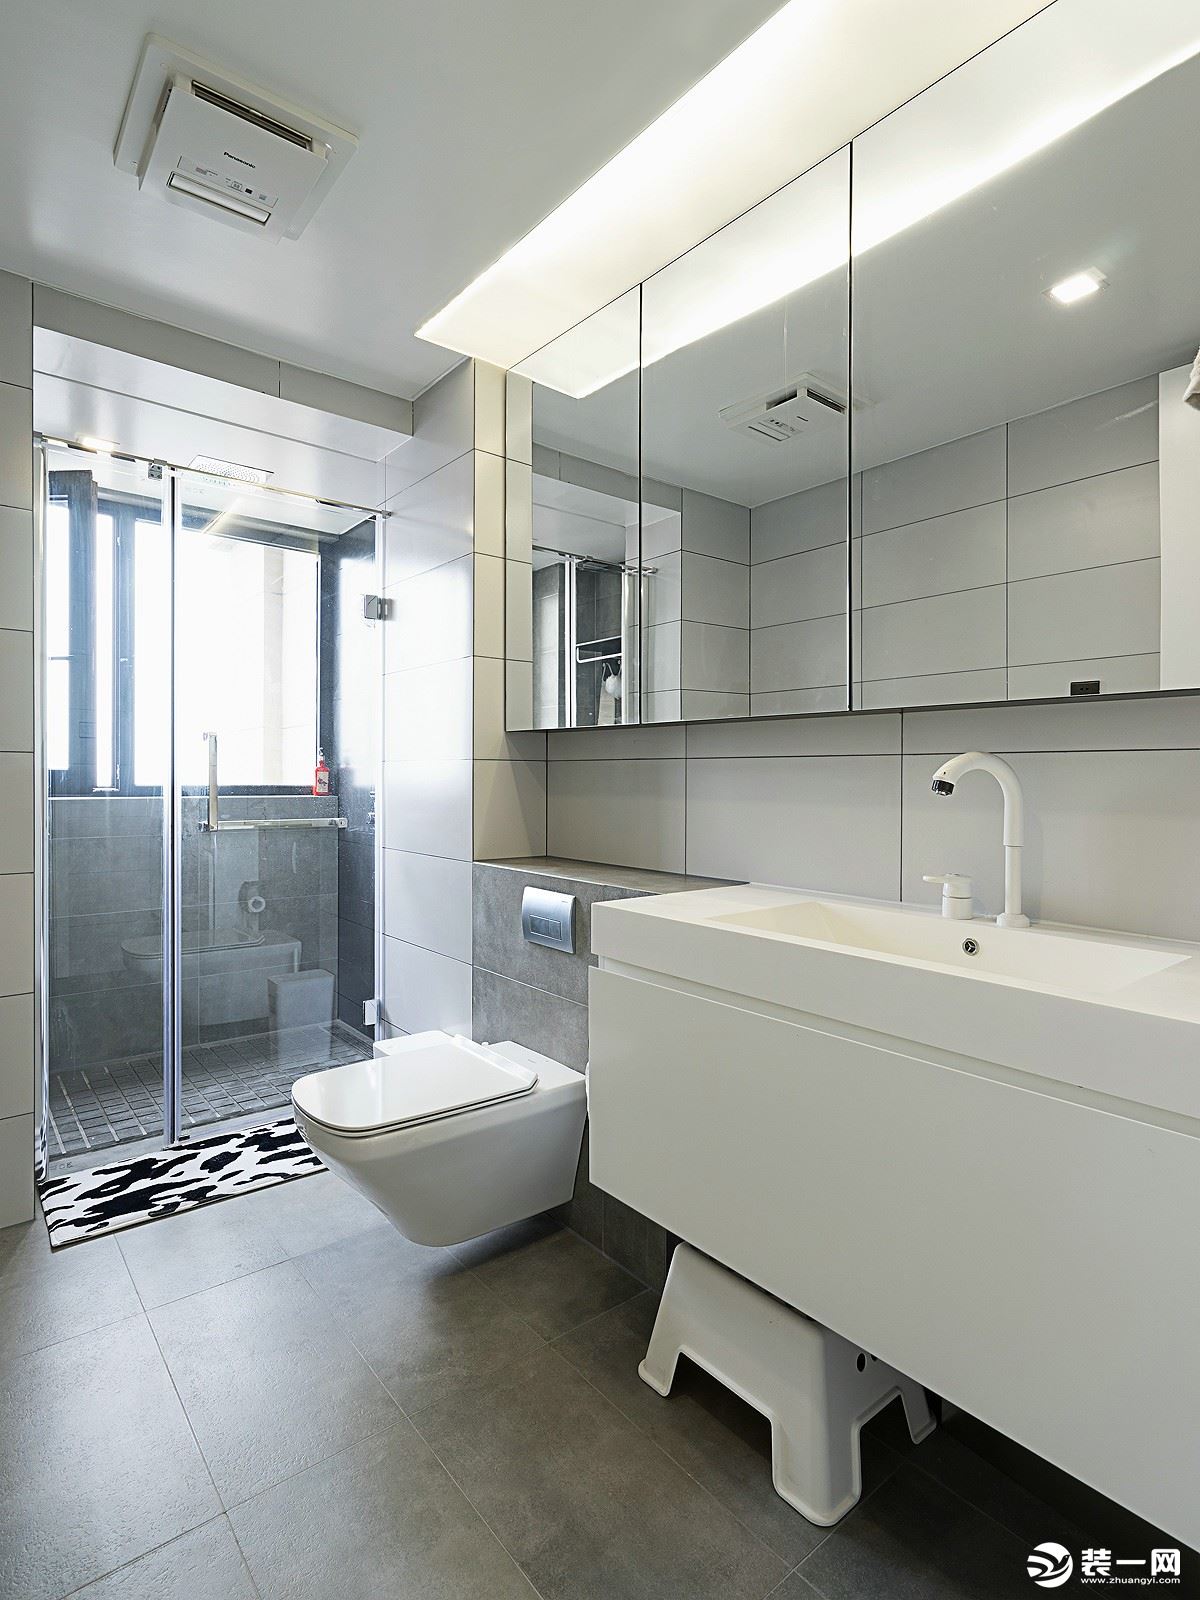 卫生间以简洁明亮为主，干湿分离的设计，既保留空间通透性也开拓空间视野。